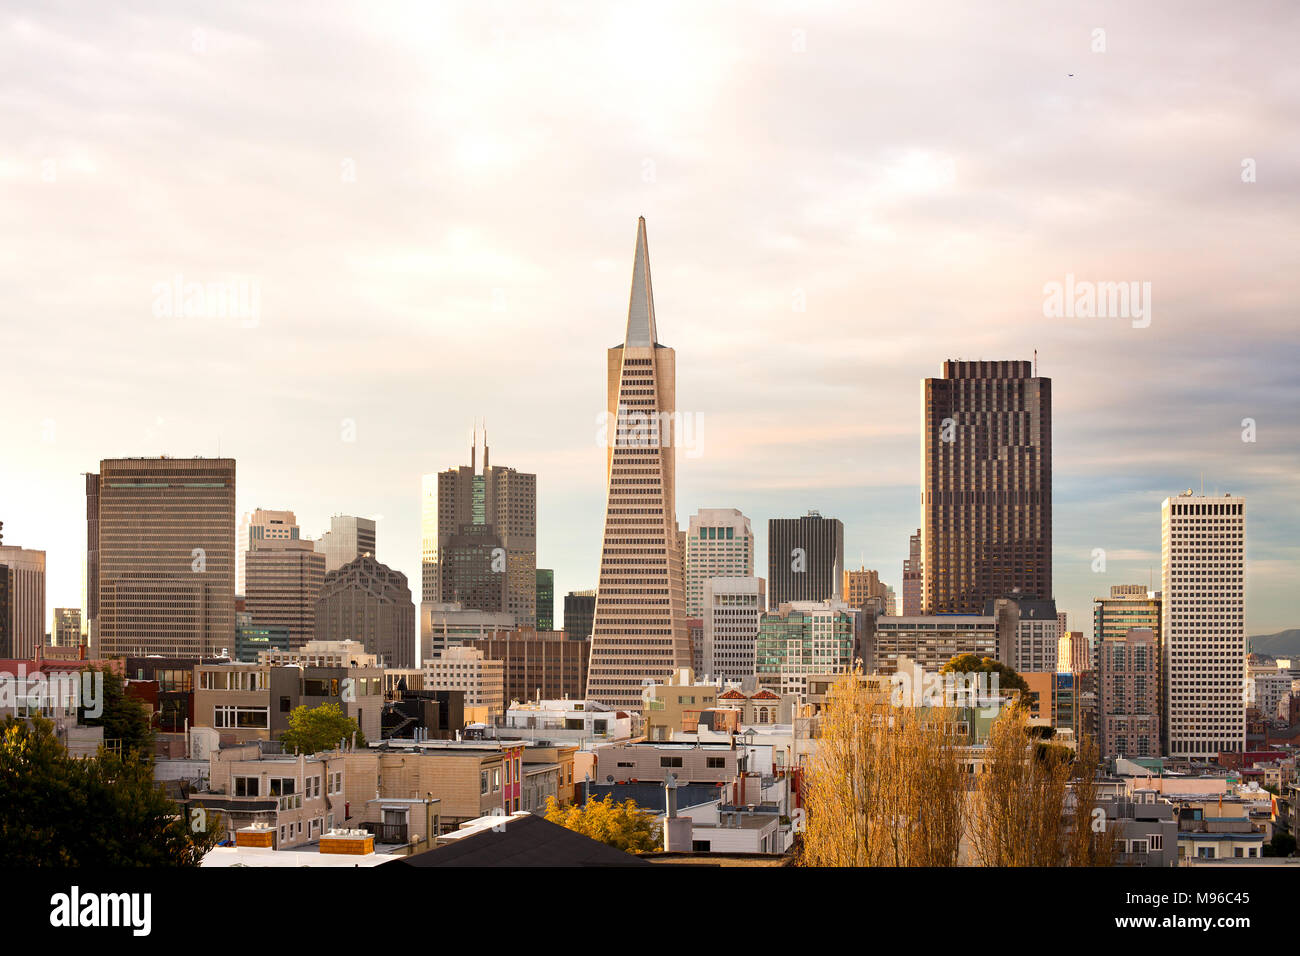 Skyline del distrito financiero de San Francisco, California, EE.UU. Foto de stock